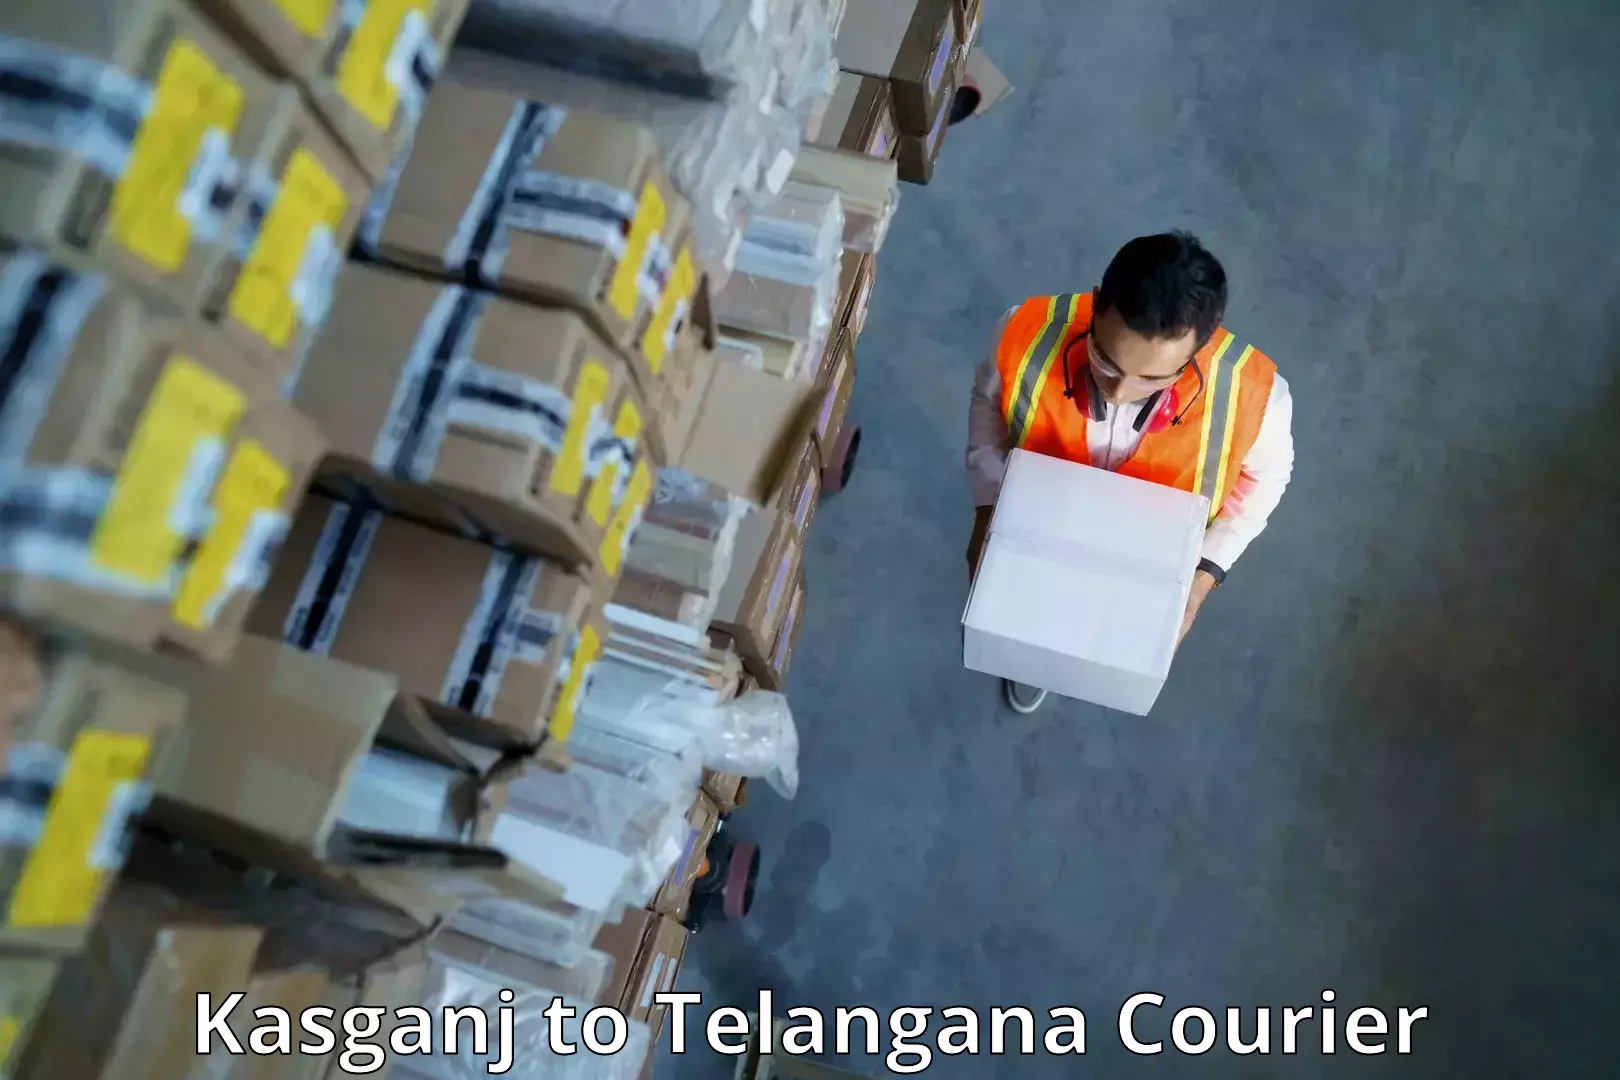 Urban courier service Kasganj to Balanagar